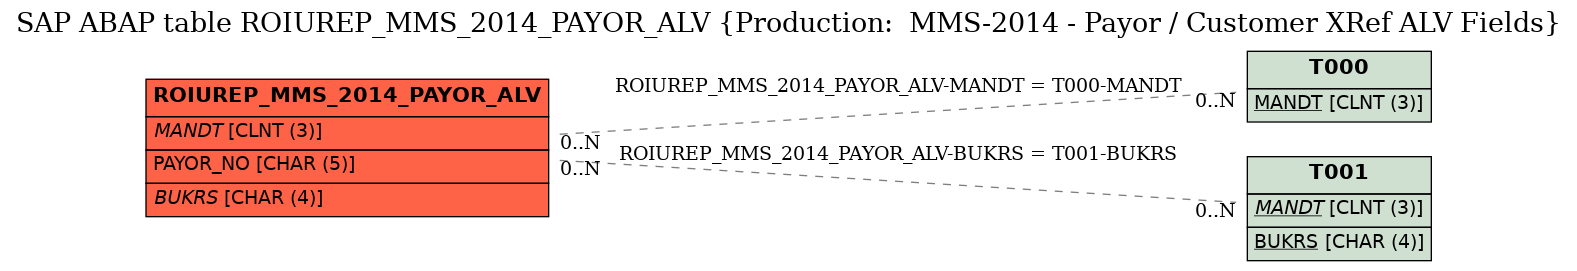 E-R Diagram for table ROIUREP_MMS_2014_PAYOR_ALV (Production:  MMS-2014 - Payor / Customer XRef ALV Fields)